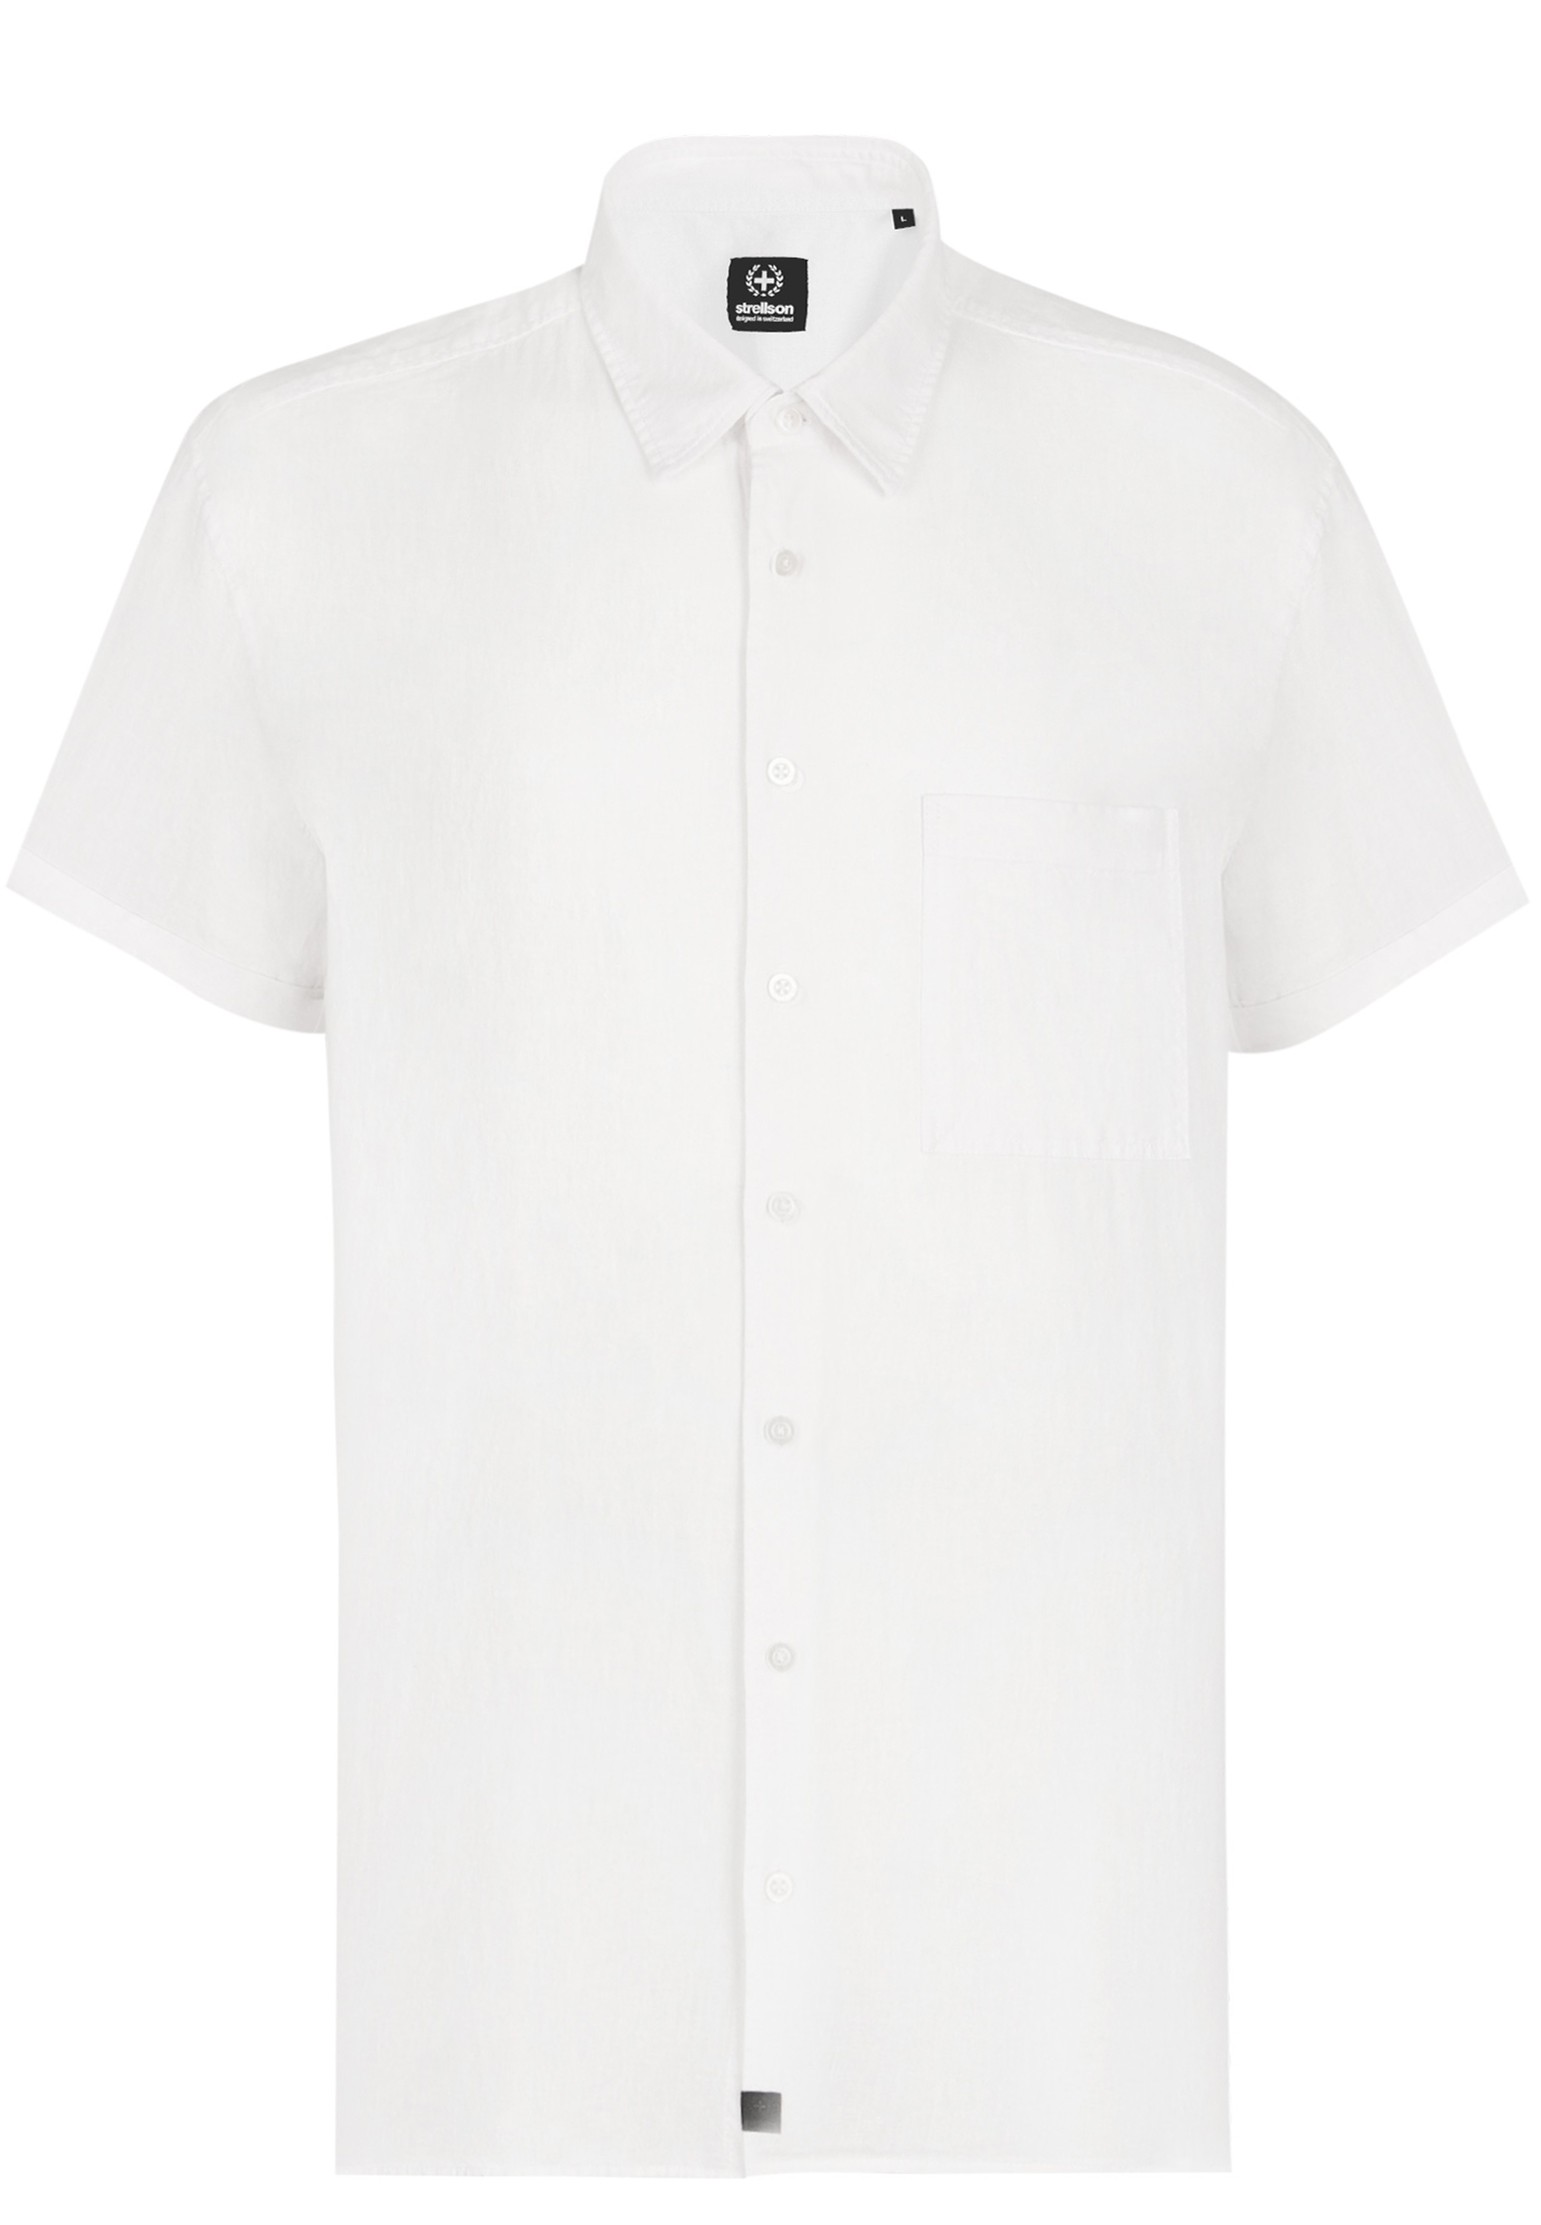 Рубашка мужская Strellson 127403 белая M